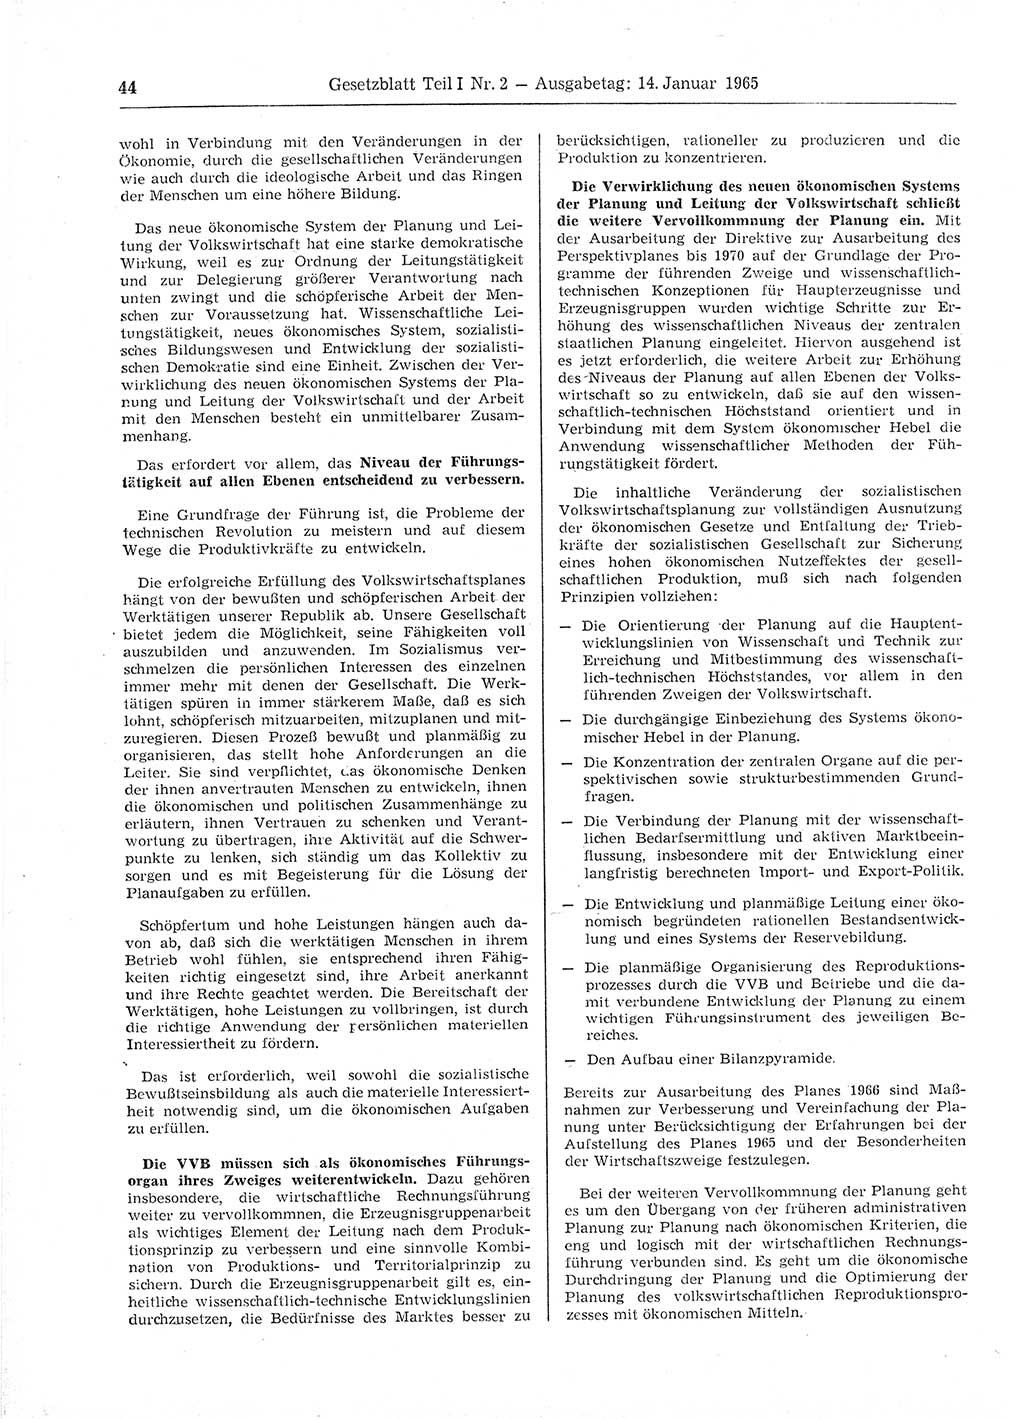 Gesetzblatt (GBl.) der Deutschen Demokratischen Republik (DDR) Teil Ⅰ 1965, Seite 44 (GBl. DDR Ⅰ 1965, S. 44)